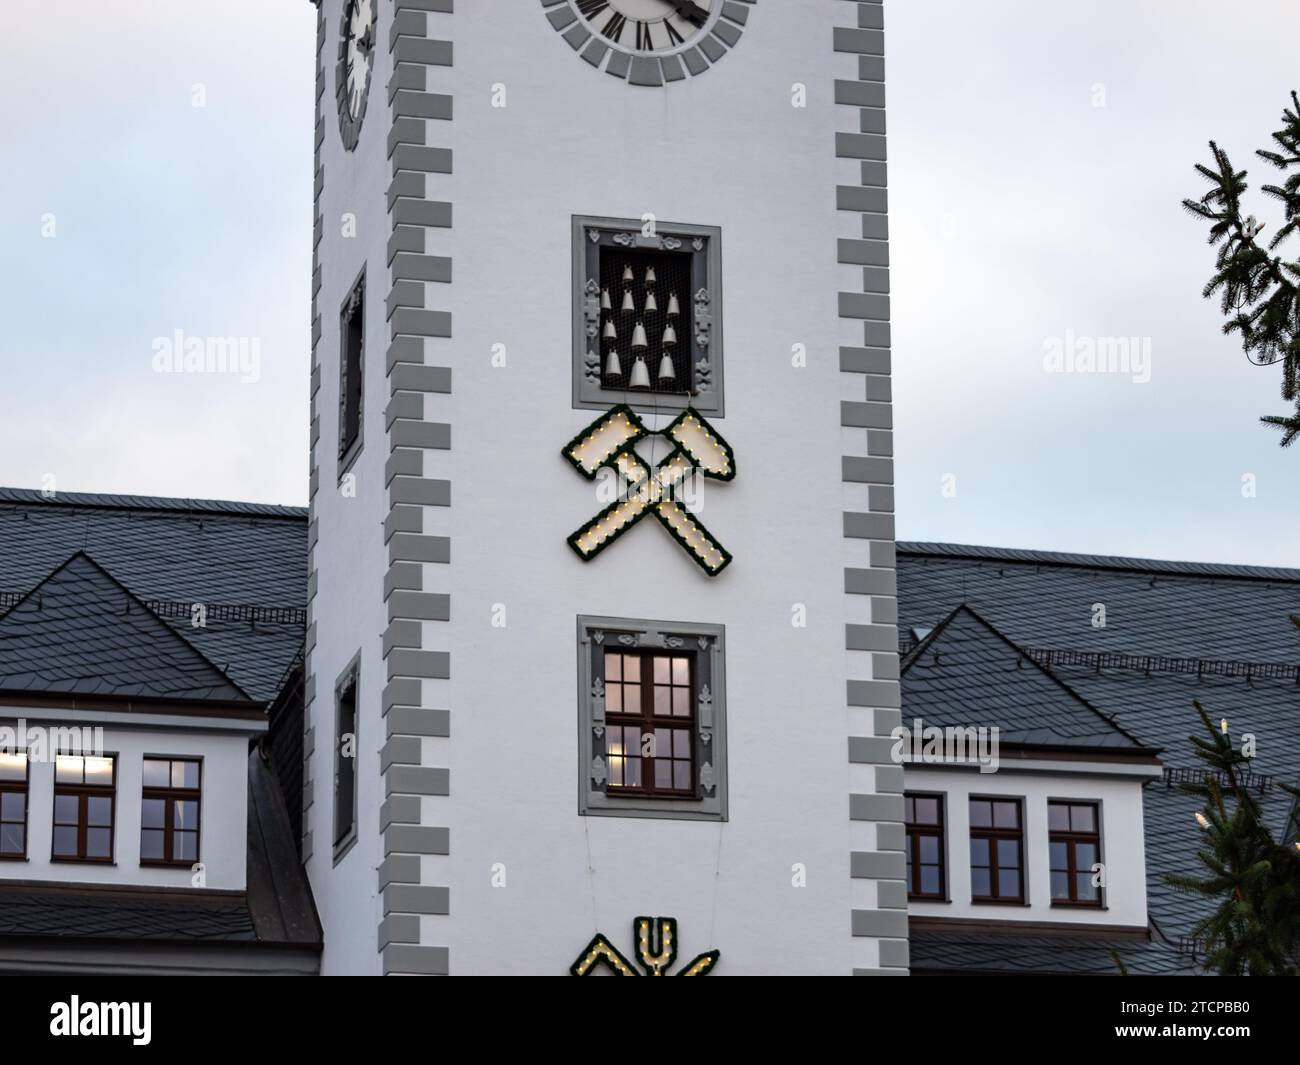 Symbole minier sur le bâtiment de la mairie. Le logo marteau et pick est illuminé pendant la période de Noël. Tradition de vacances à Freiberg. Banque D'Images